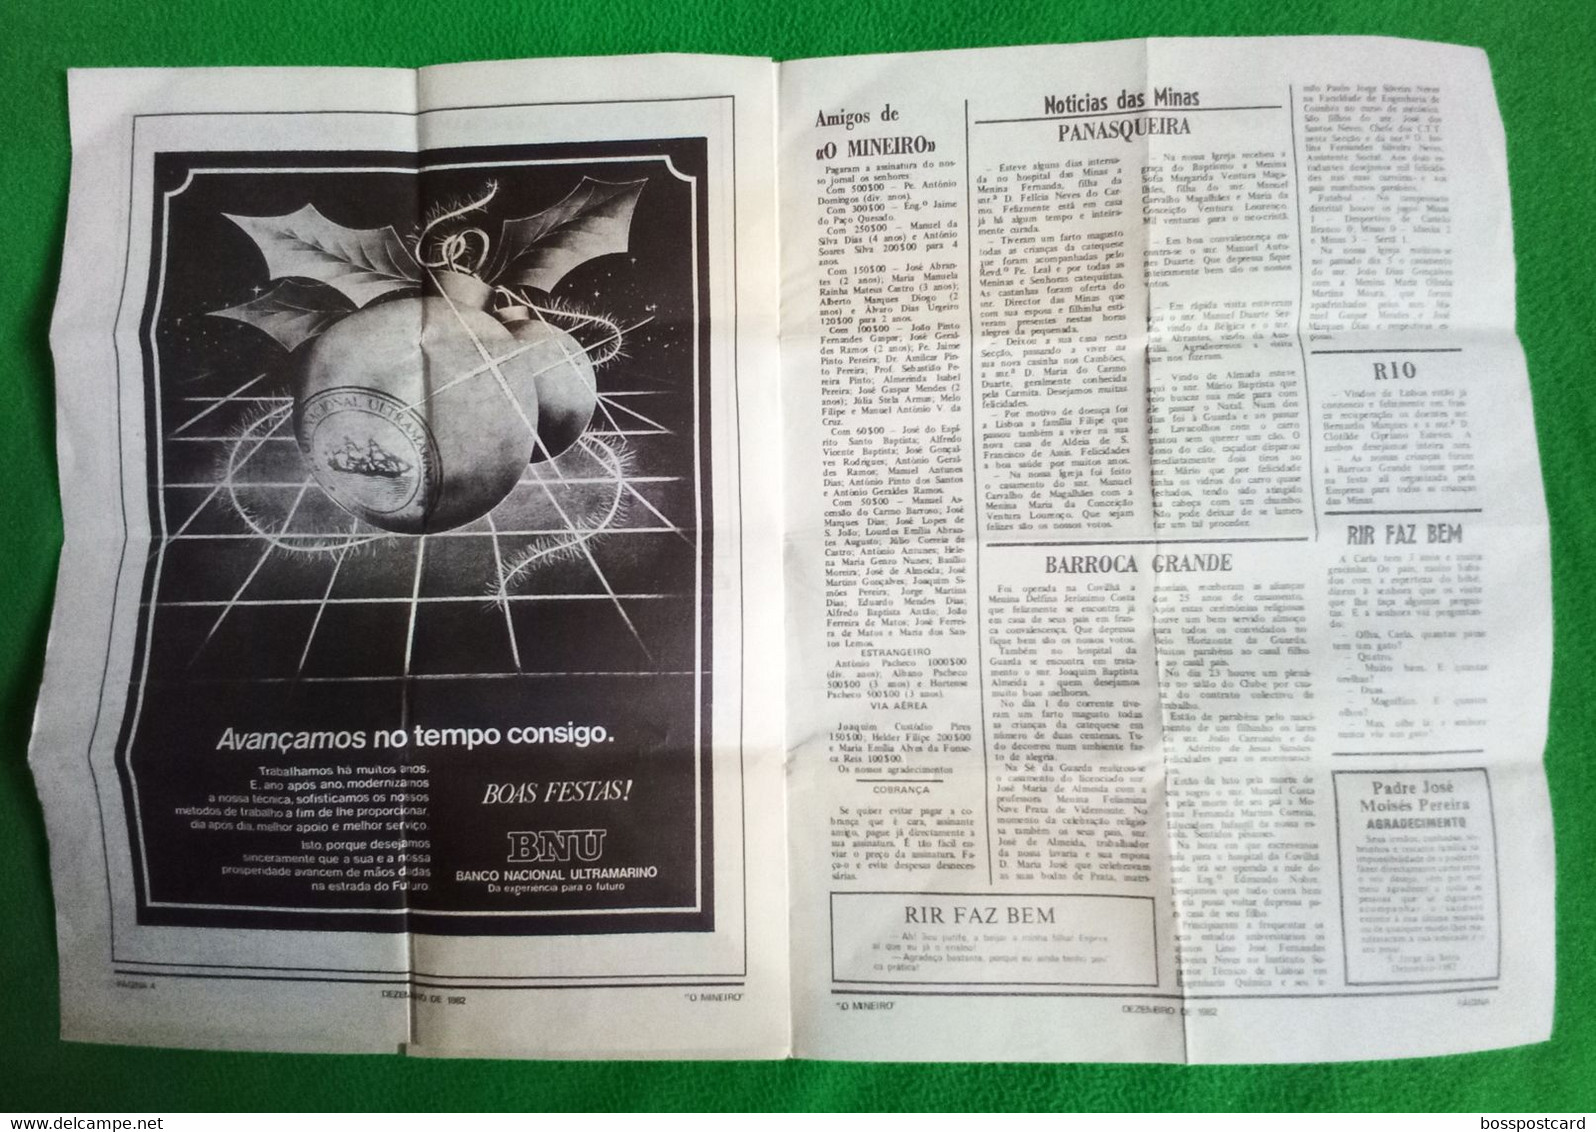 Panasqueira - Jornal O Mineiro Nº 24, Dezembro De 1982 - Minas. Castelo Branco. Portugal.. - General Issues